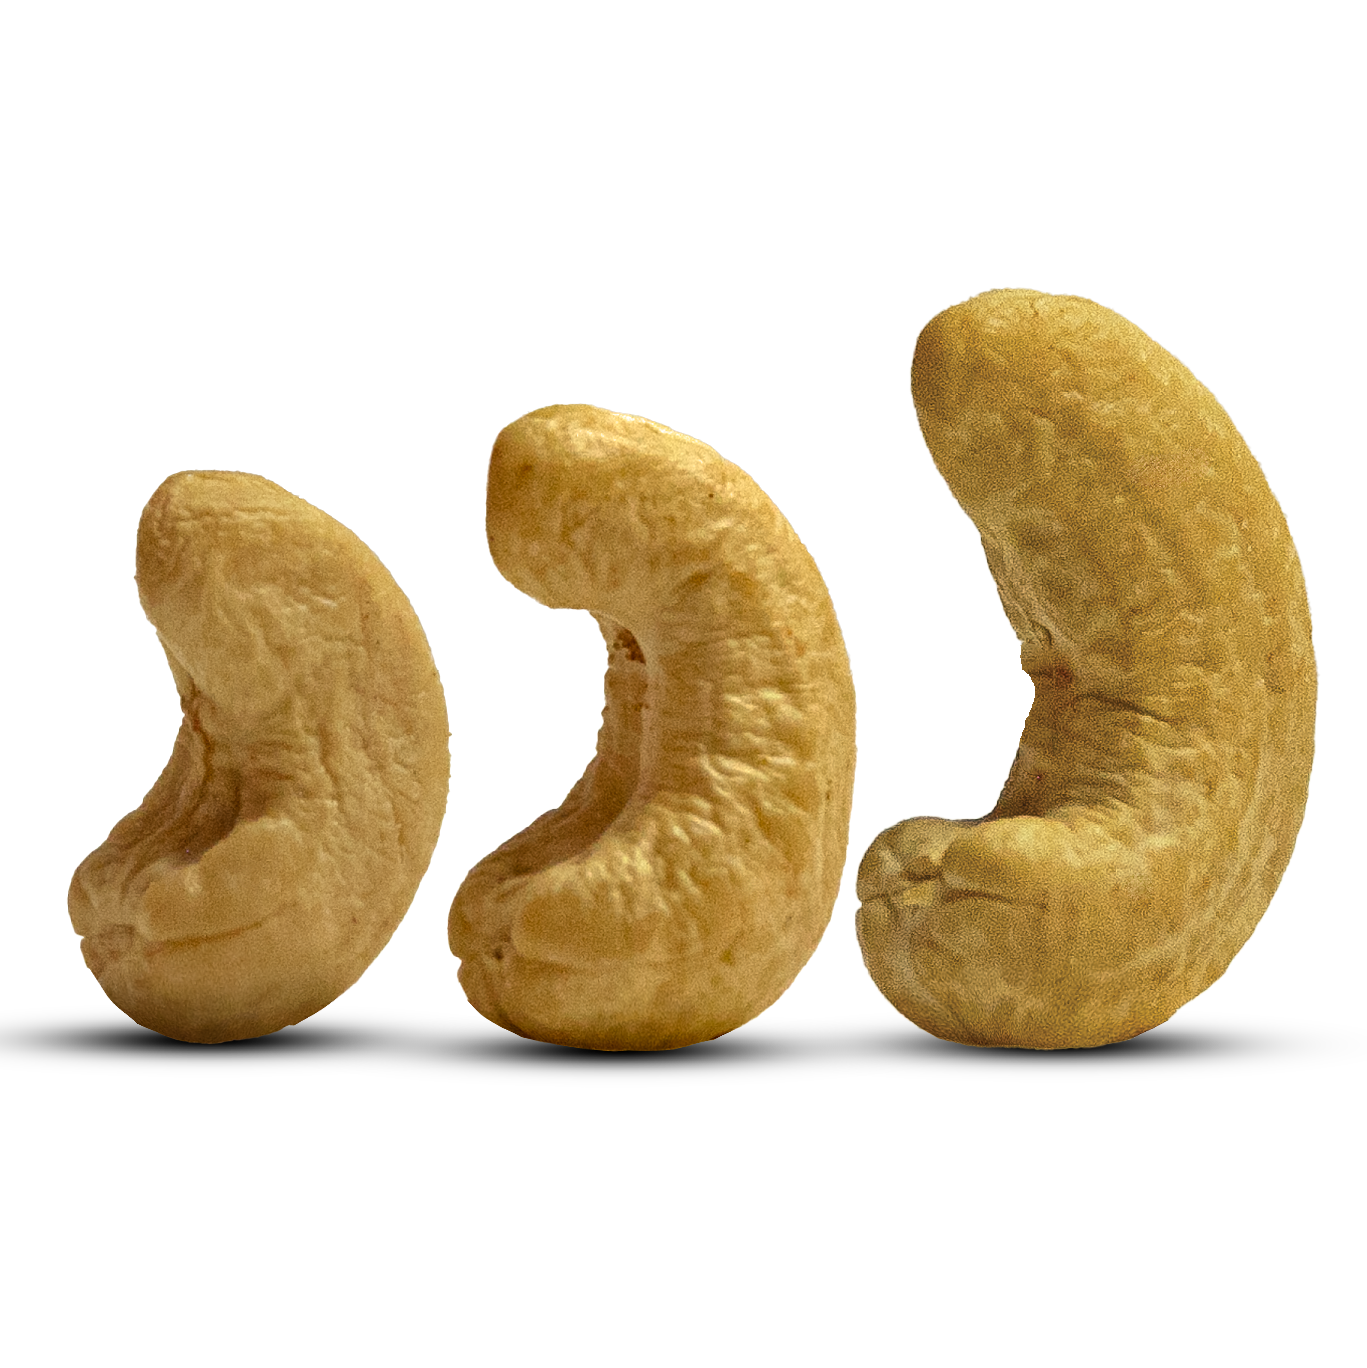 کاجو یا کاشو و یا همان بادام هندی خودمان را بشناسیم. ( cashew )